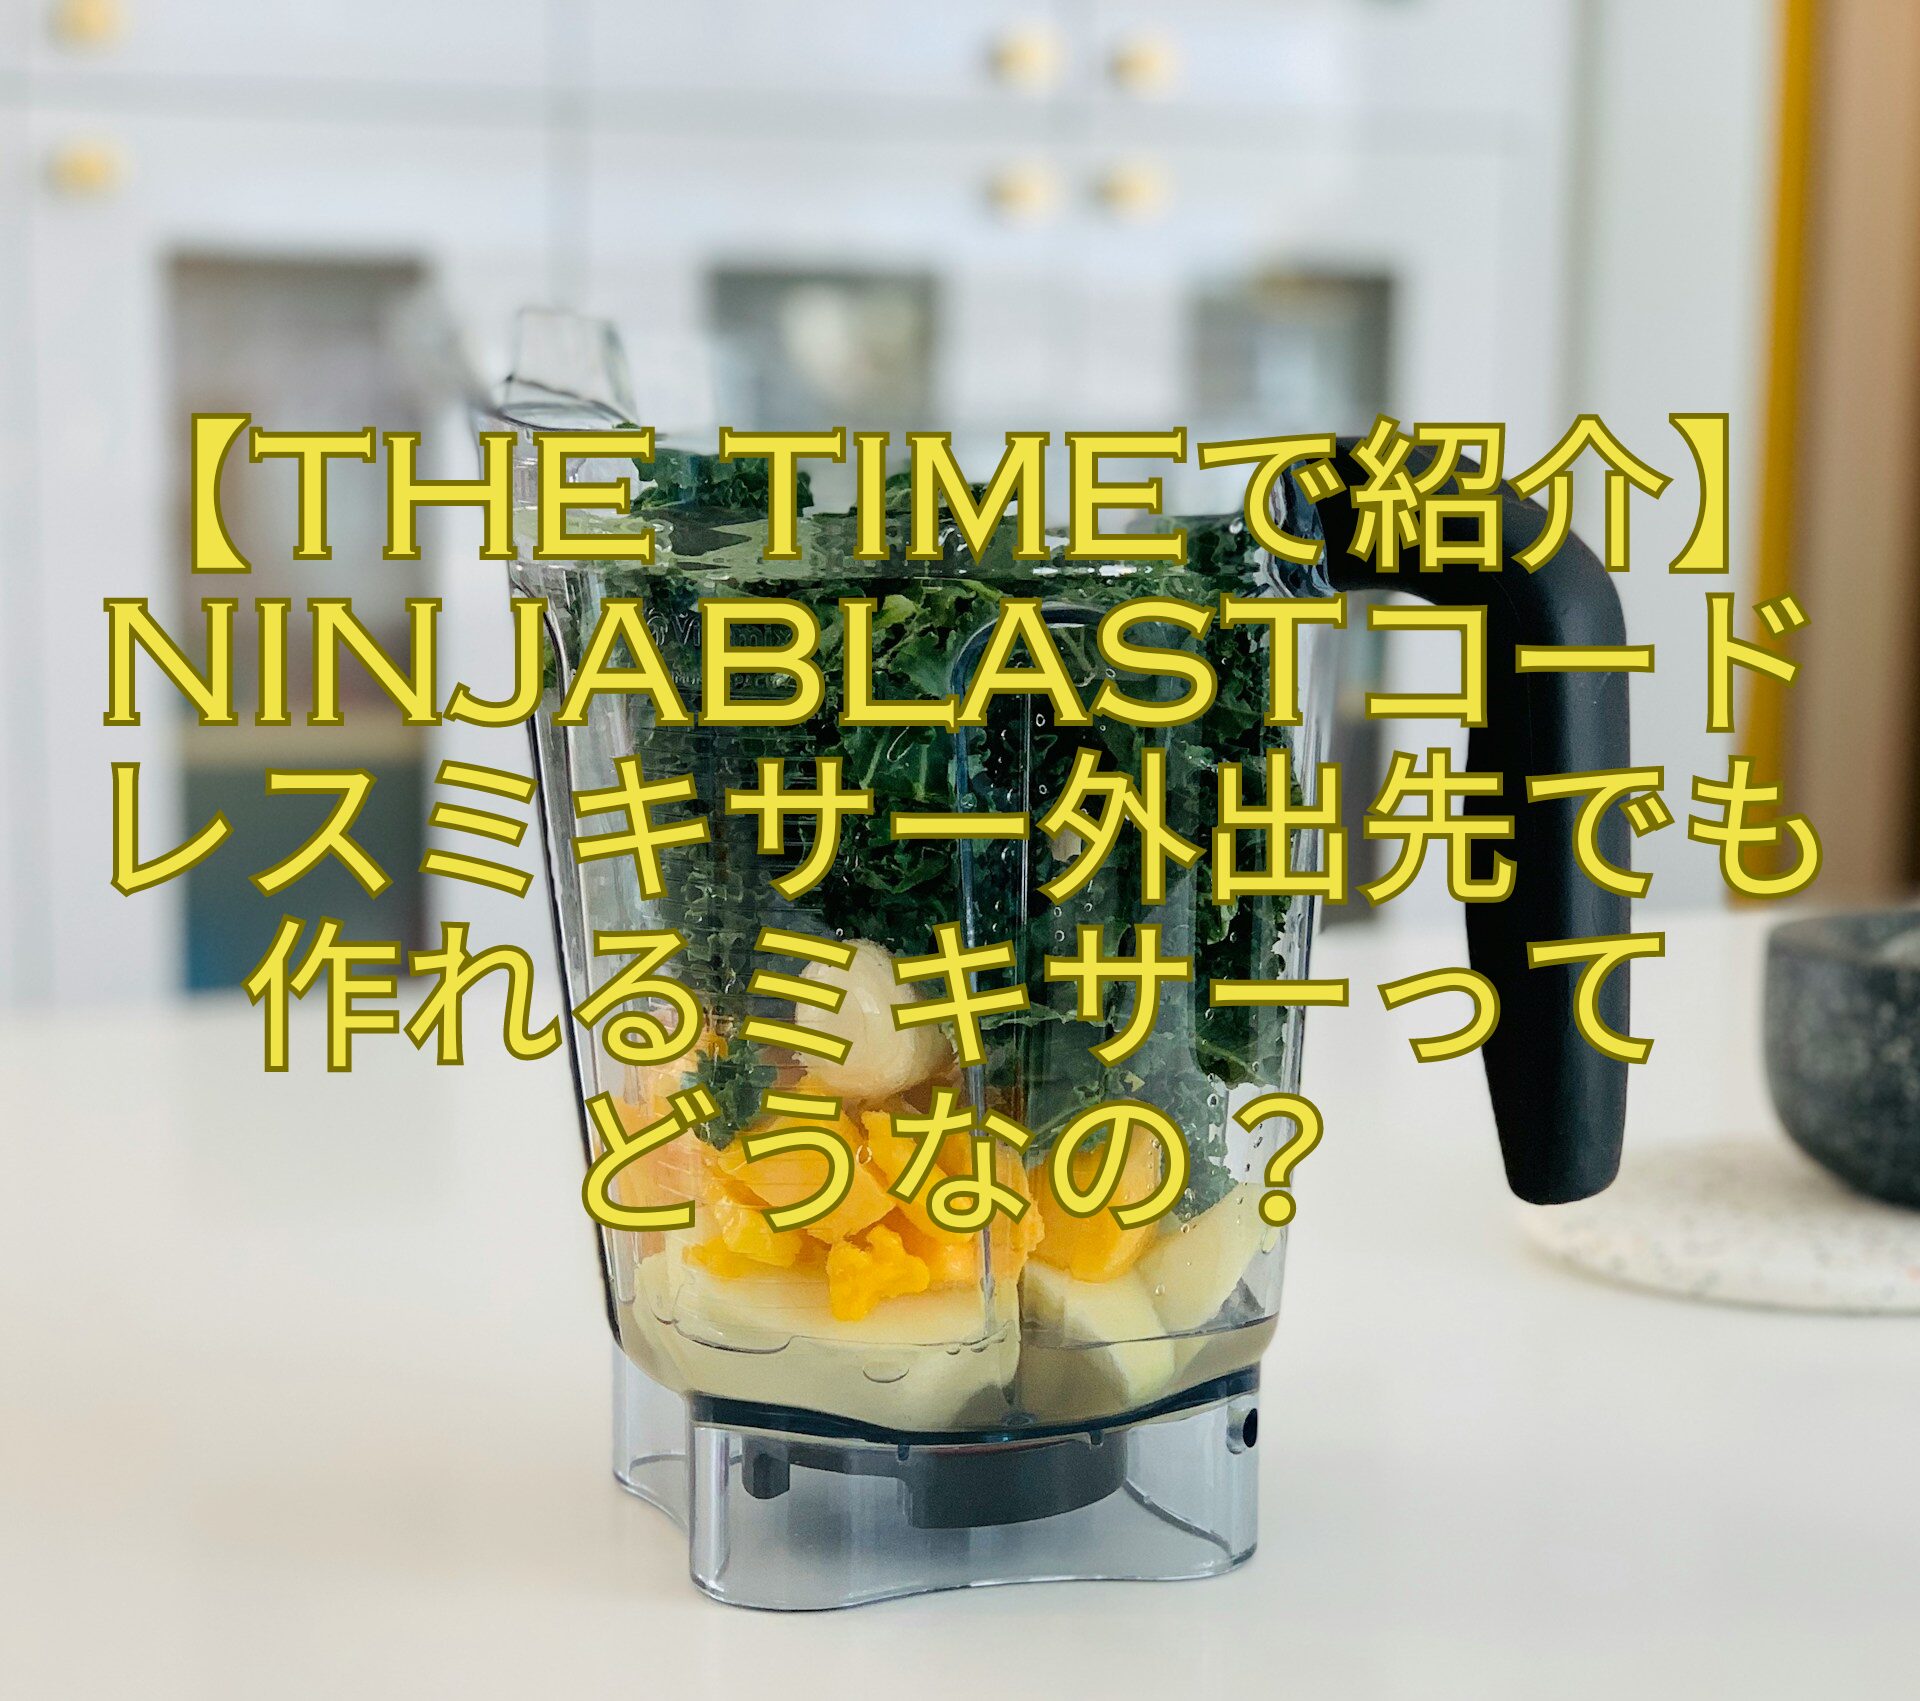 【THE-TIMEで紹介】NinjaBlastコードレスミキサー外出先でも作れるミキサーって-どうなの